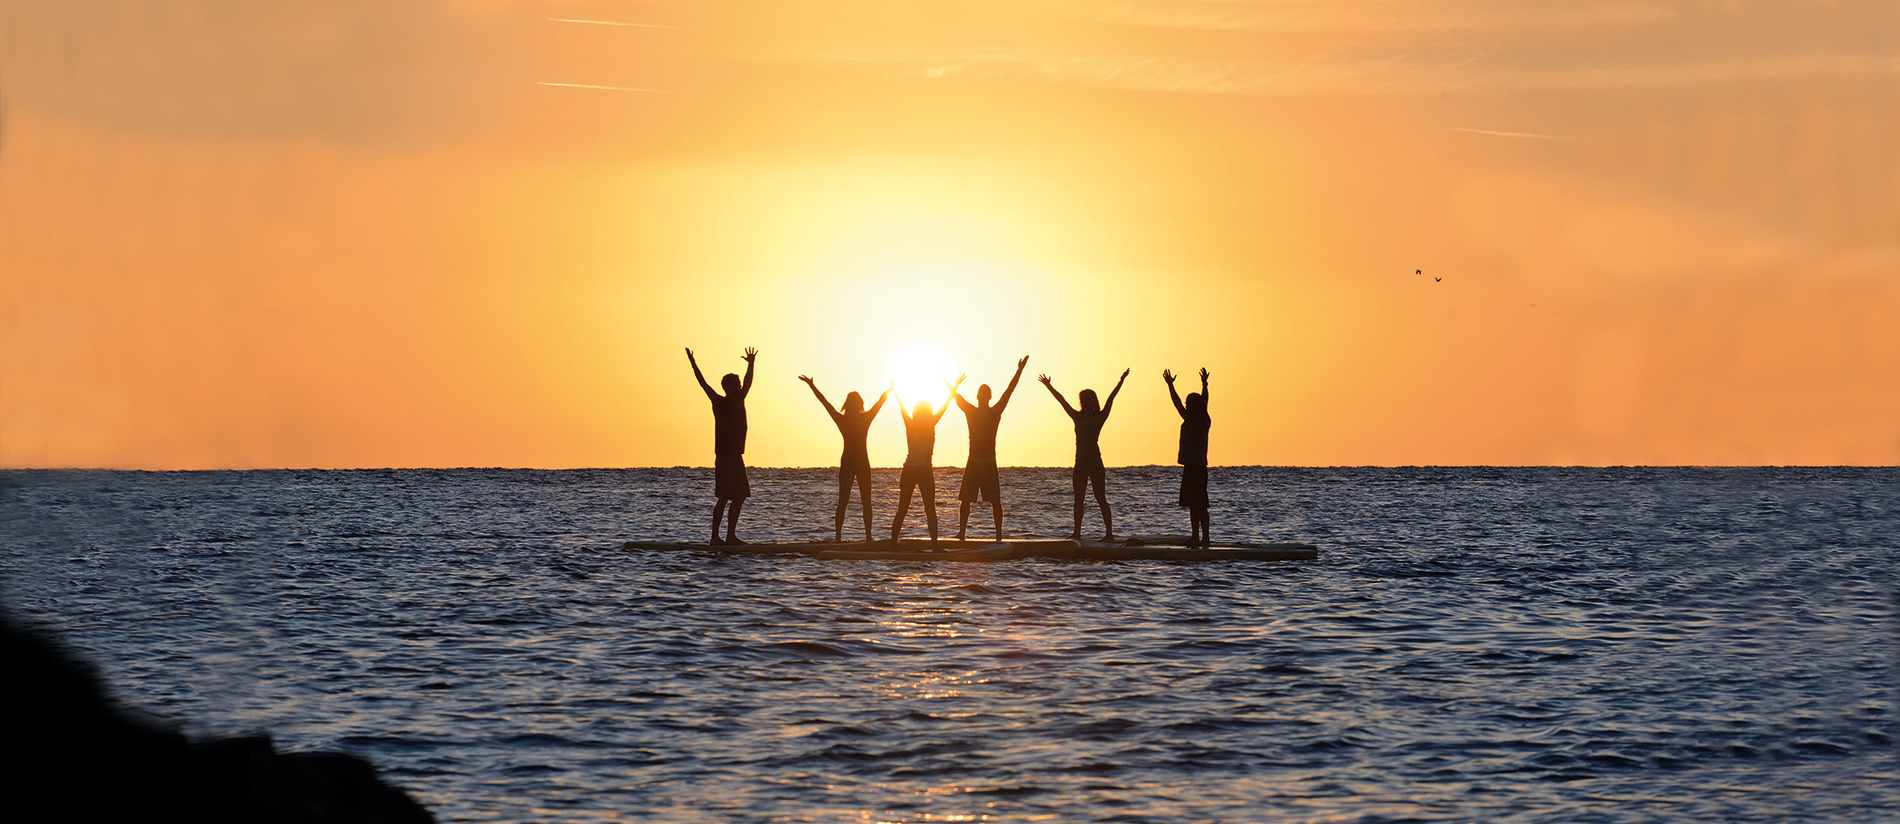 sechs glückliche SUP Paddler - stehend am SUP Board und Sonnenuntergang-Stimmung